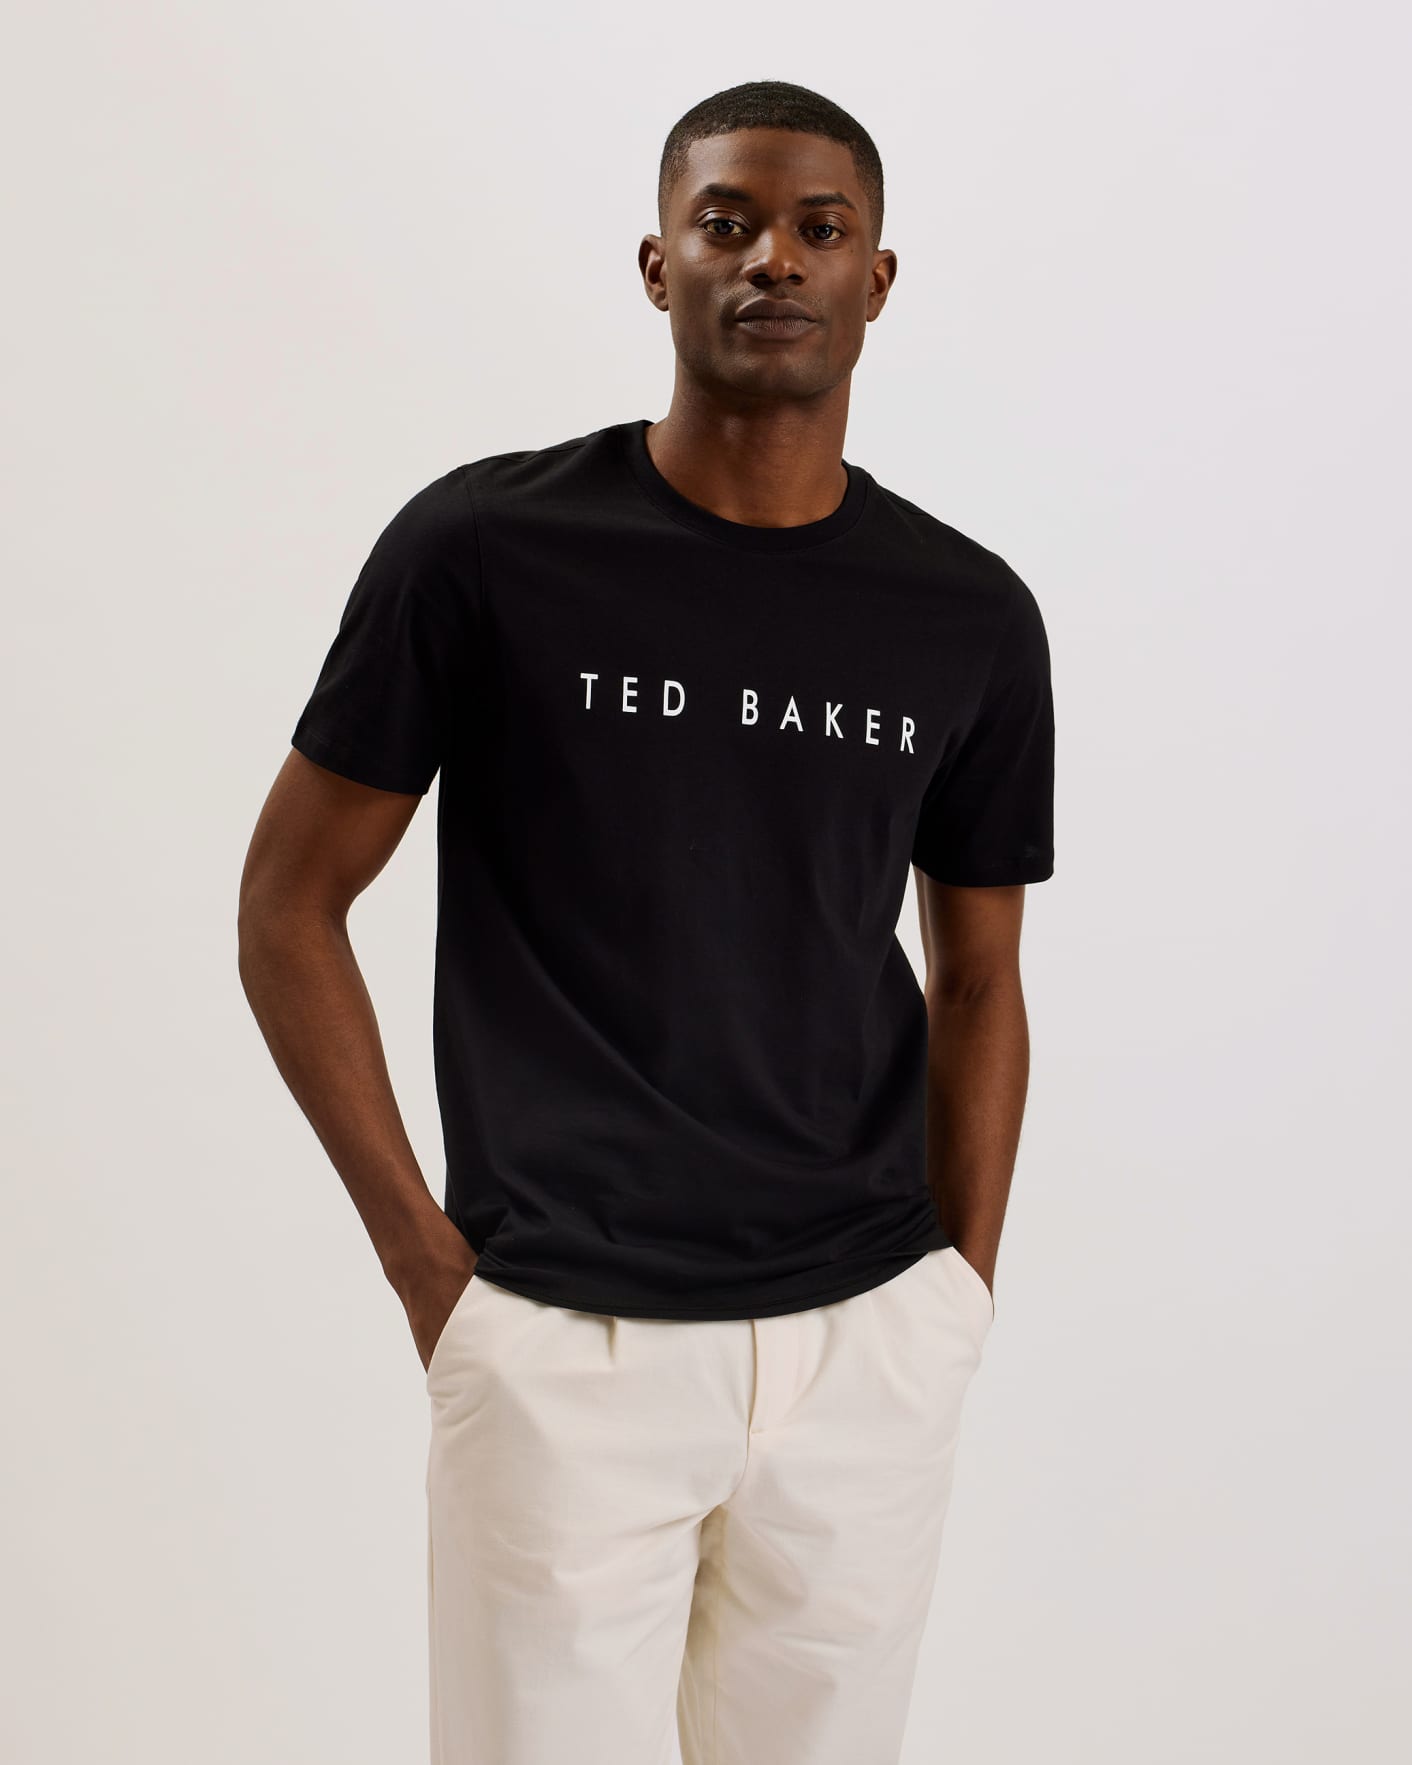 Ted Baker T Shirt Sale | vlr.eng.br